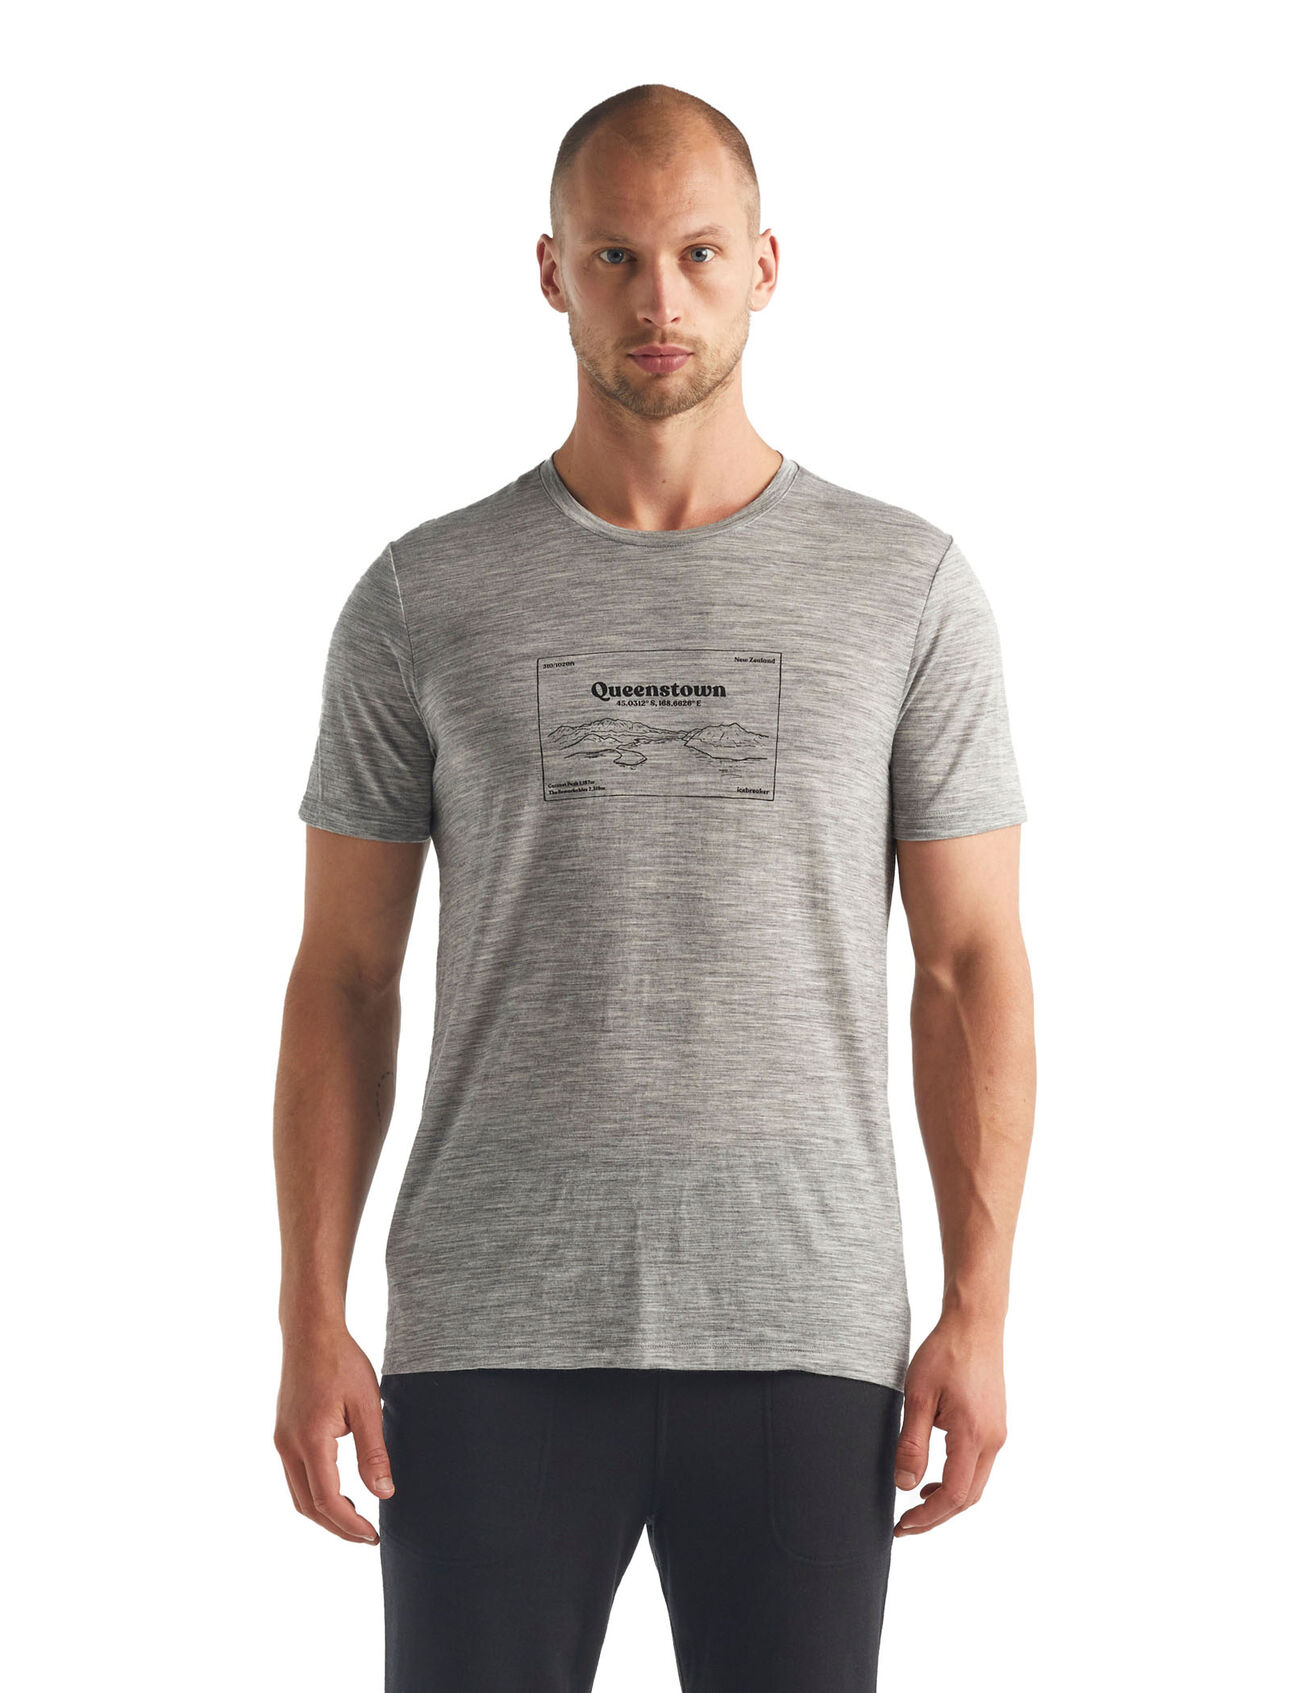 T-shirt in lana merino Tech Lite Short Sleeve Crewe Queenstown